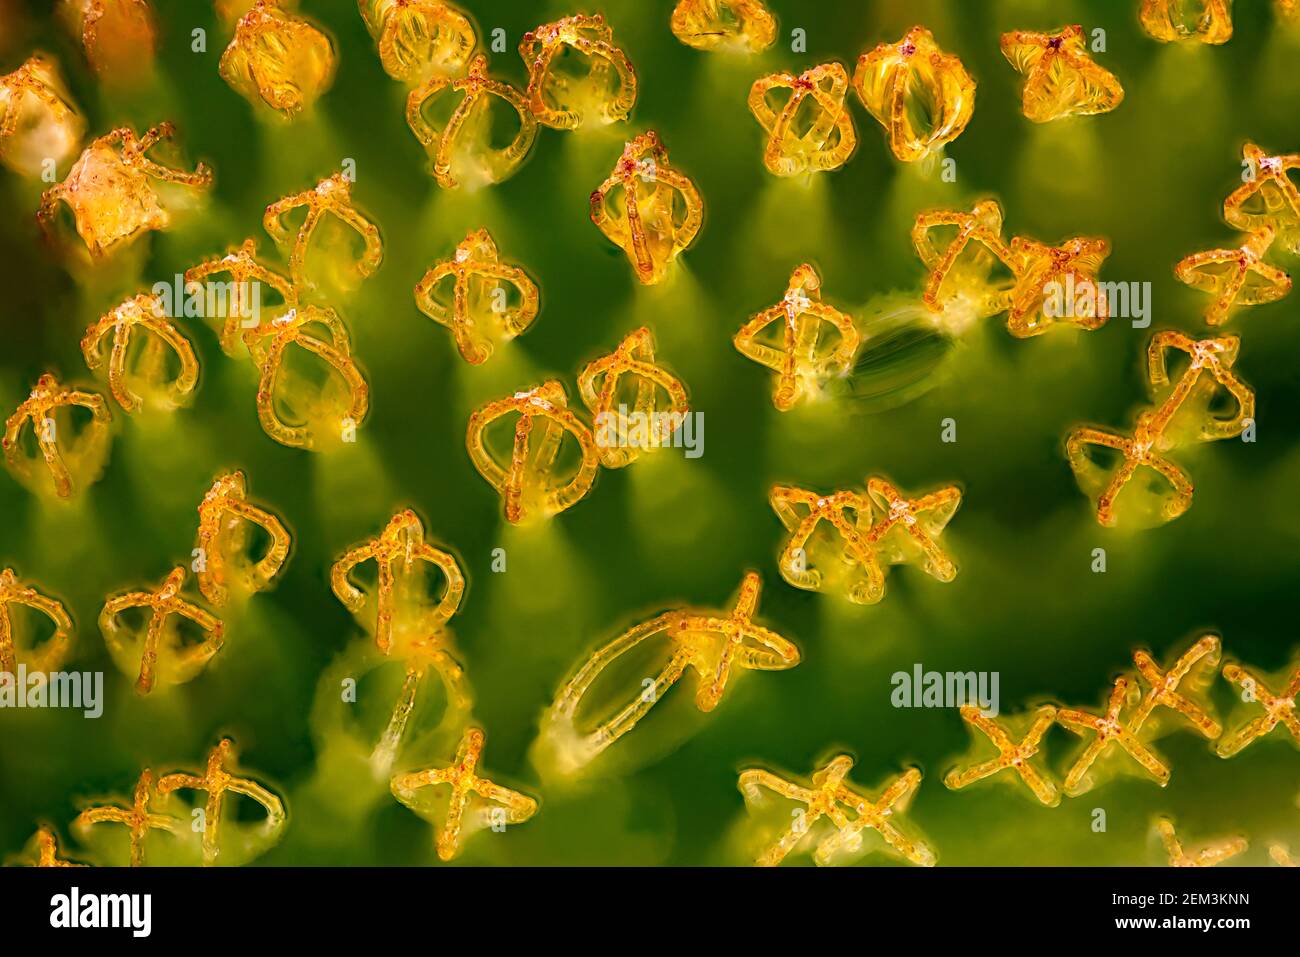 Alga gigante salvinia kariba (Salvinia molesta), peli sulla parte superiore di una foglia, effetto Salvinia, microscopio ottico, ingrandimento x12 relativo a 35 mm Foto Stock